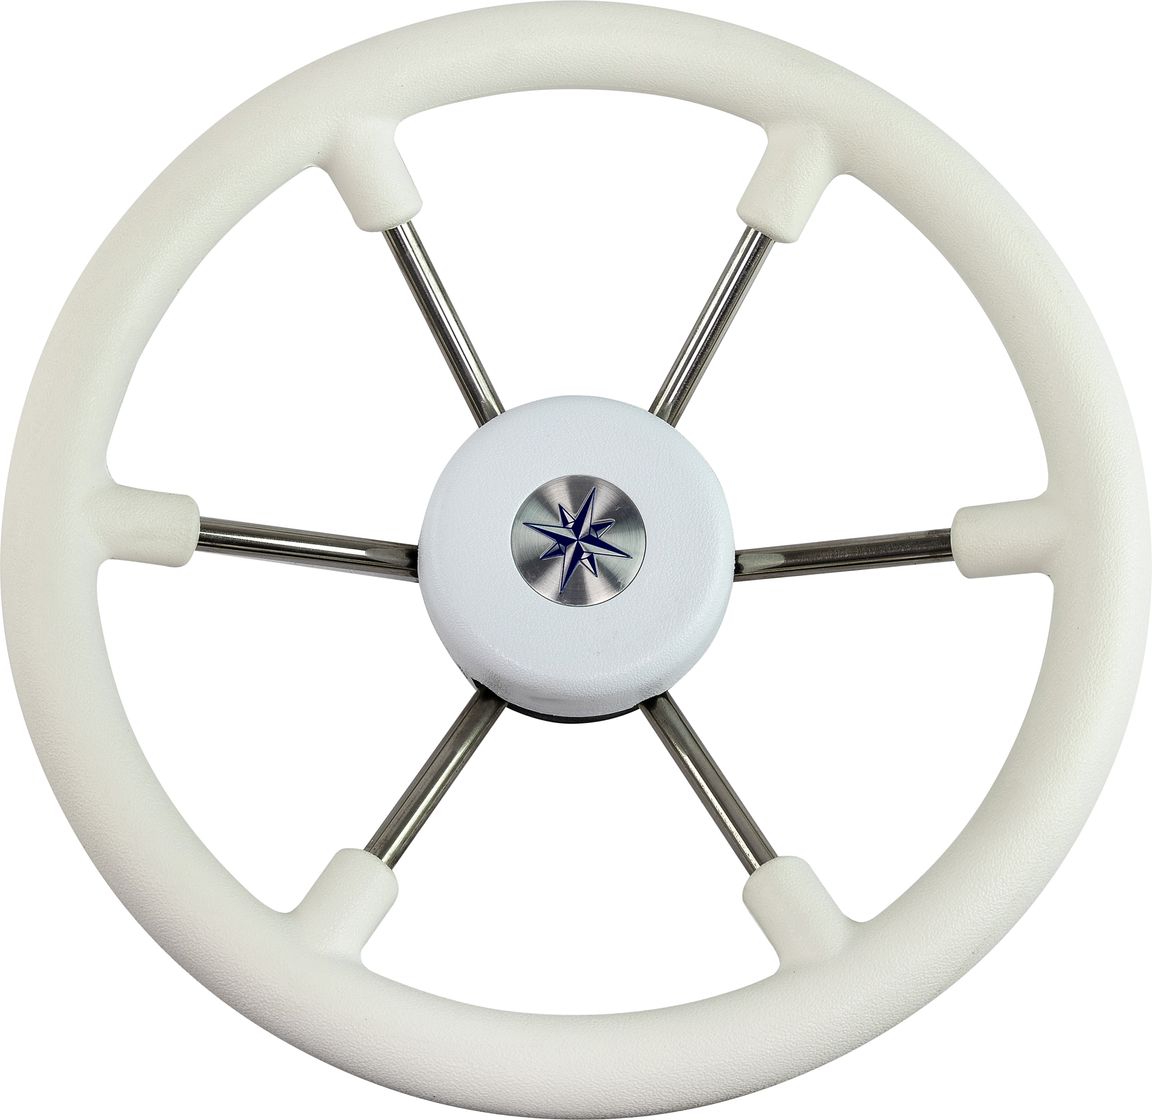 Рулевое колесо LEADER TANEGUM белый обод серебряные спицы д. 330 мм VN7330-08 рулевое колесо leader plast белый обод серебряные спицы д 330 мм vn8330 08